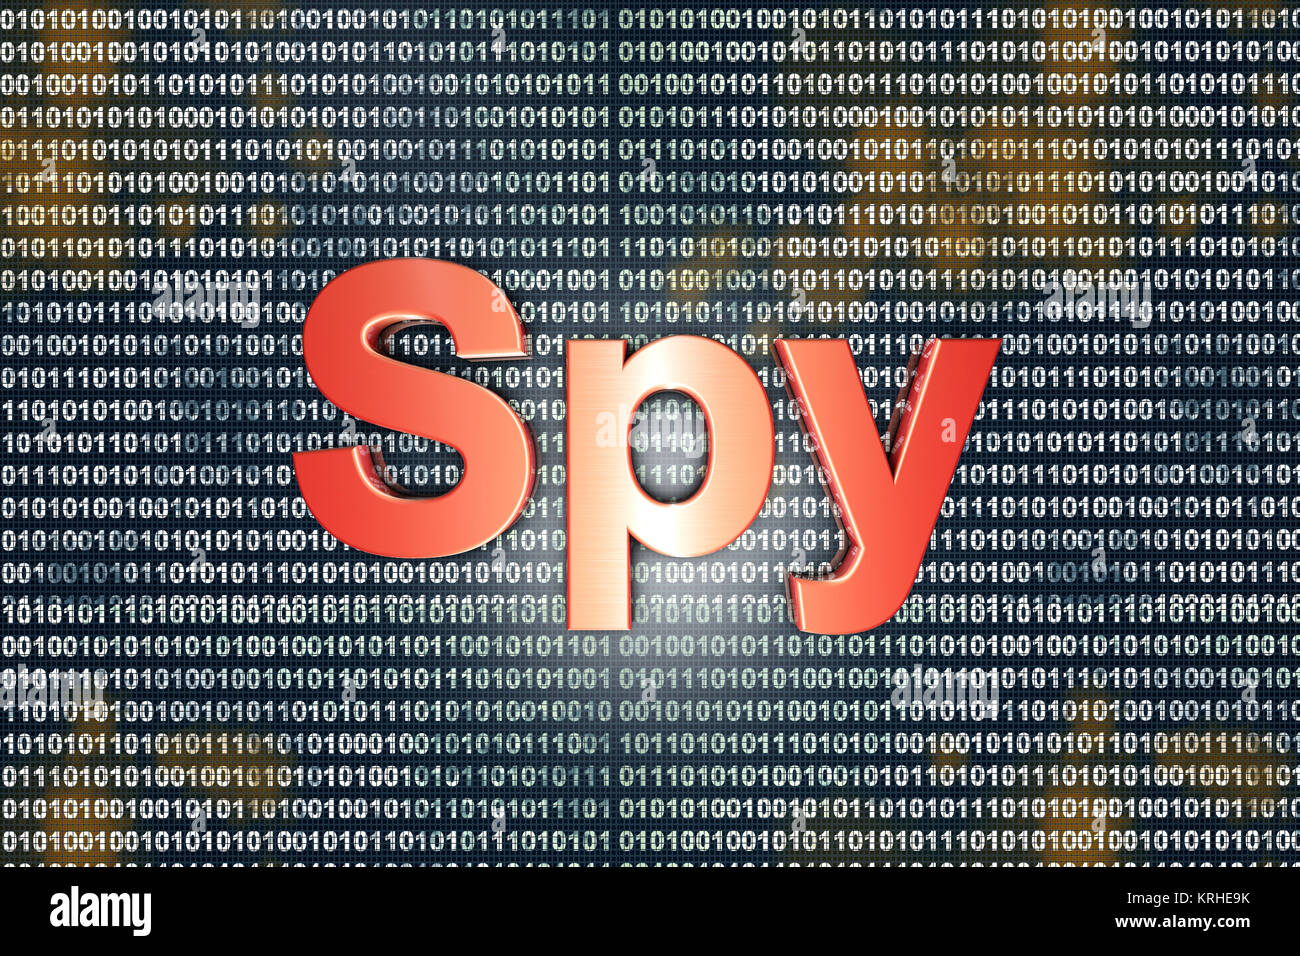 Digital Spion im Internet. Typografie vor digitalen Code. Stockfoto